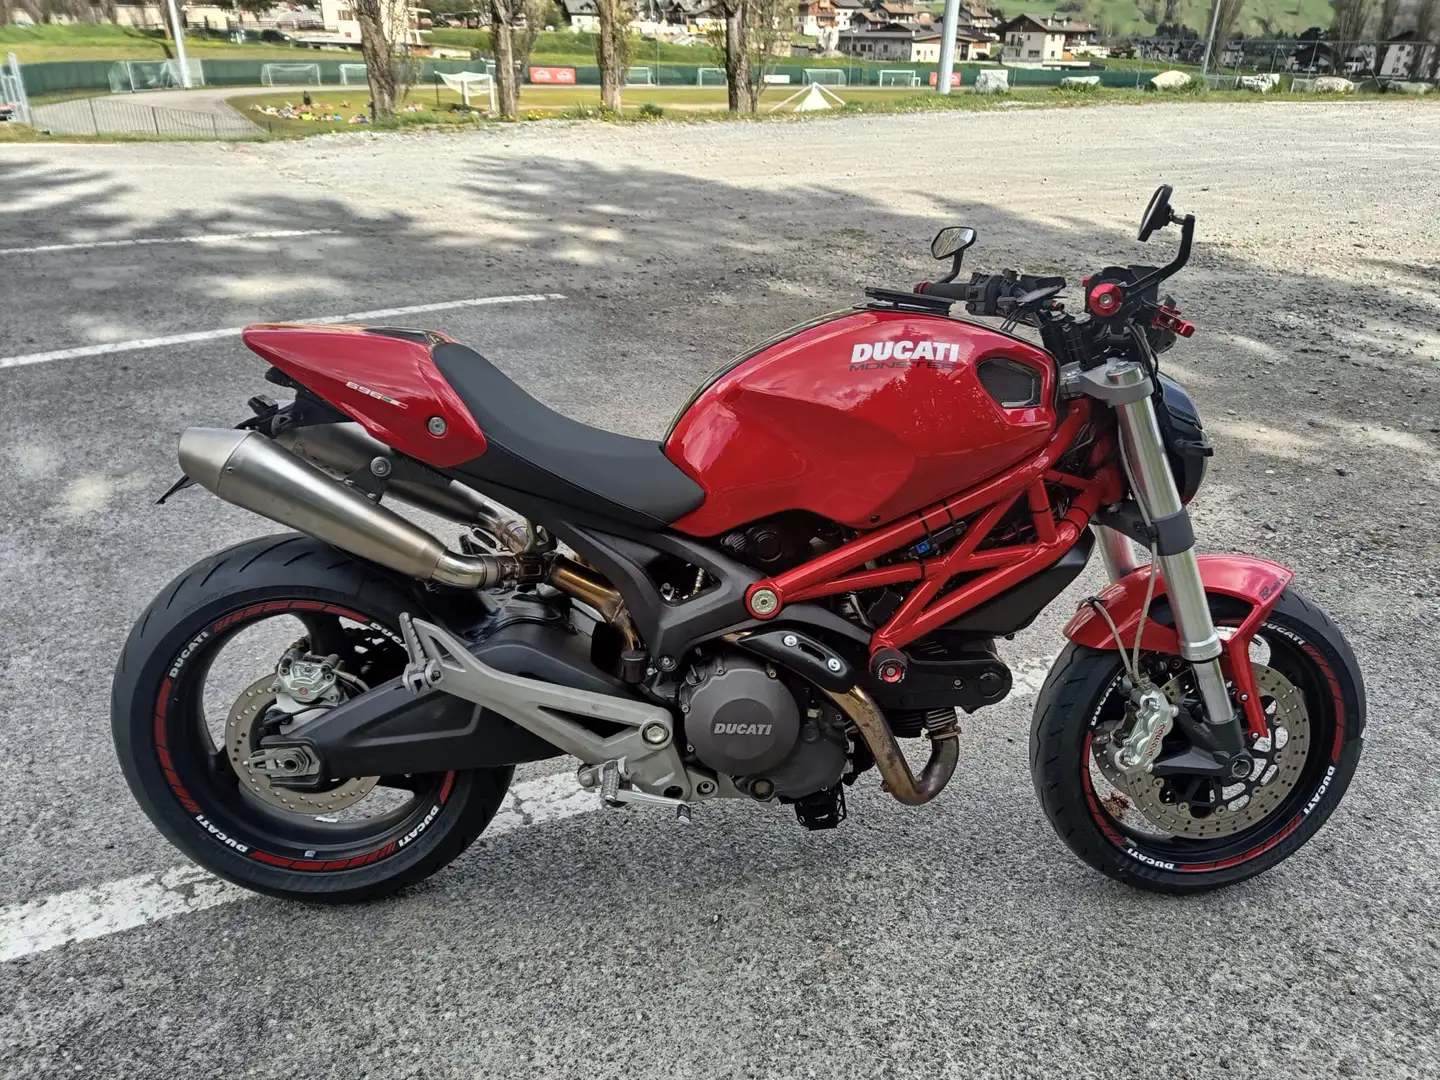 Ducati Monster 696 Depotenziata a libretto - Patente A2 Rood - 2